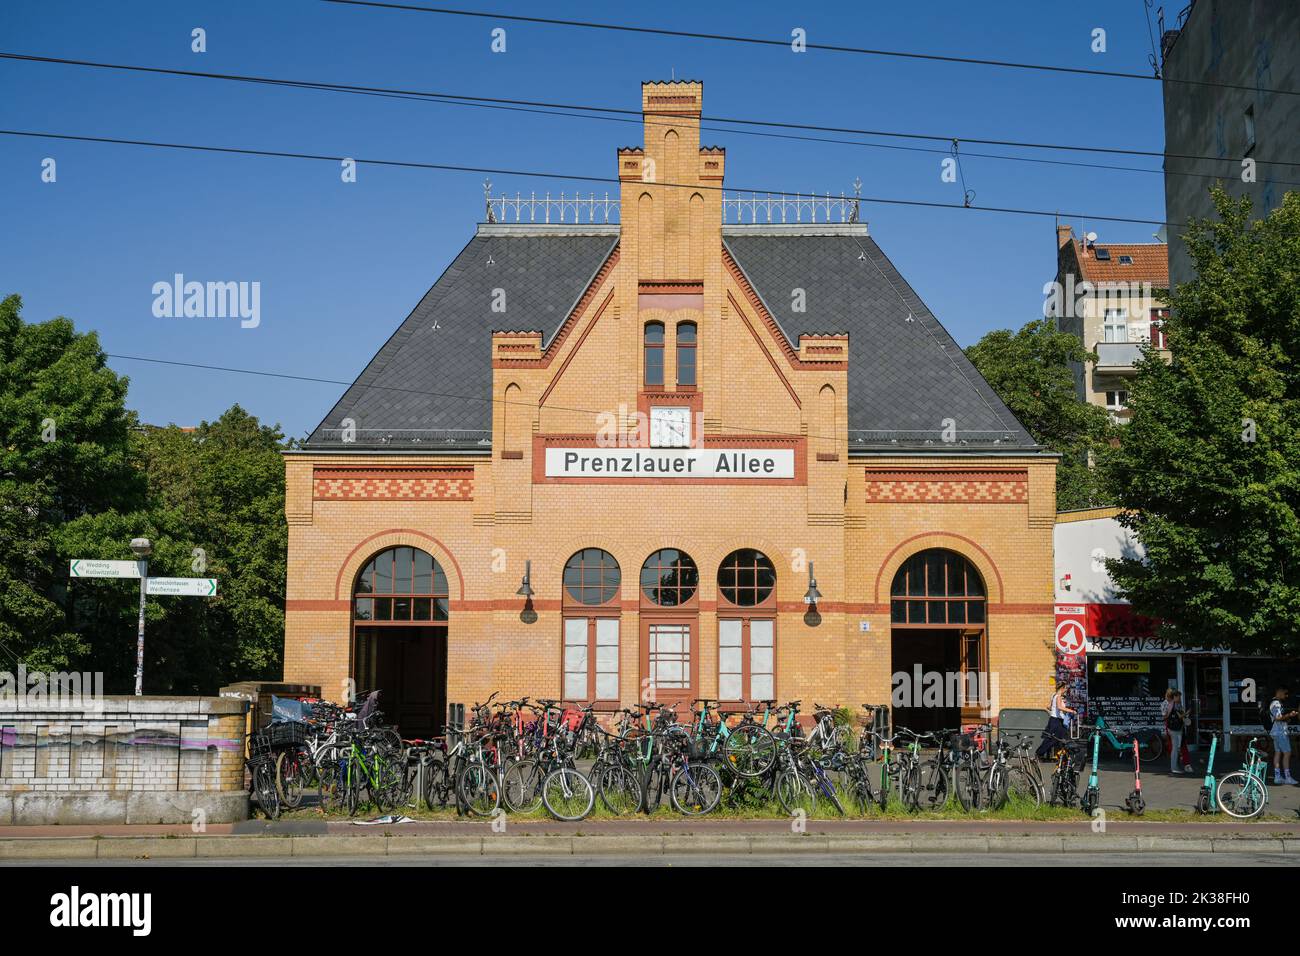 S-Bahnhof, Prenzlauer Allee, Pankow, Prenzlauer Berg, Berlin, Deutschland Foto de stock